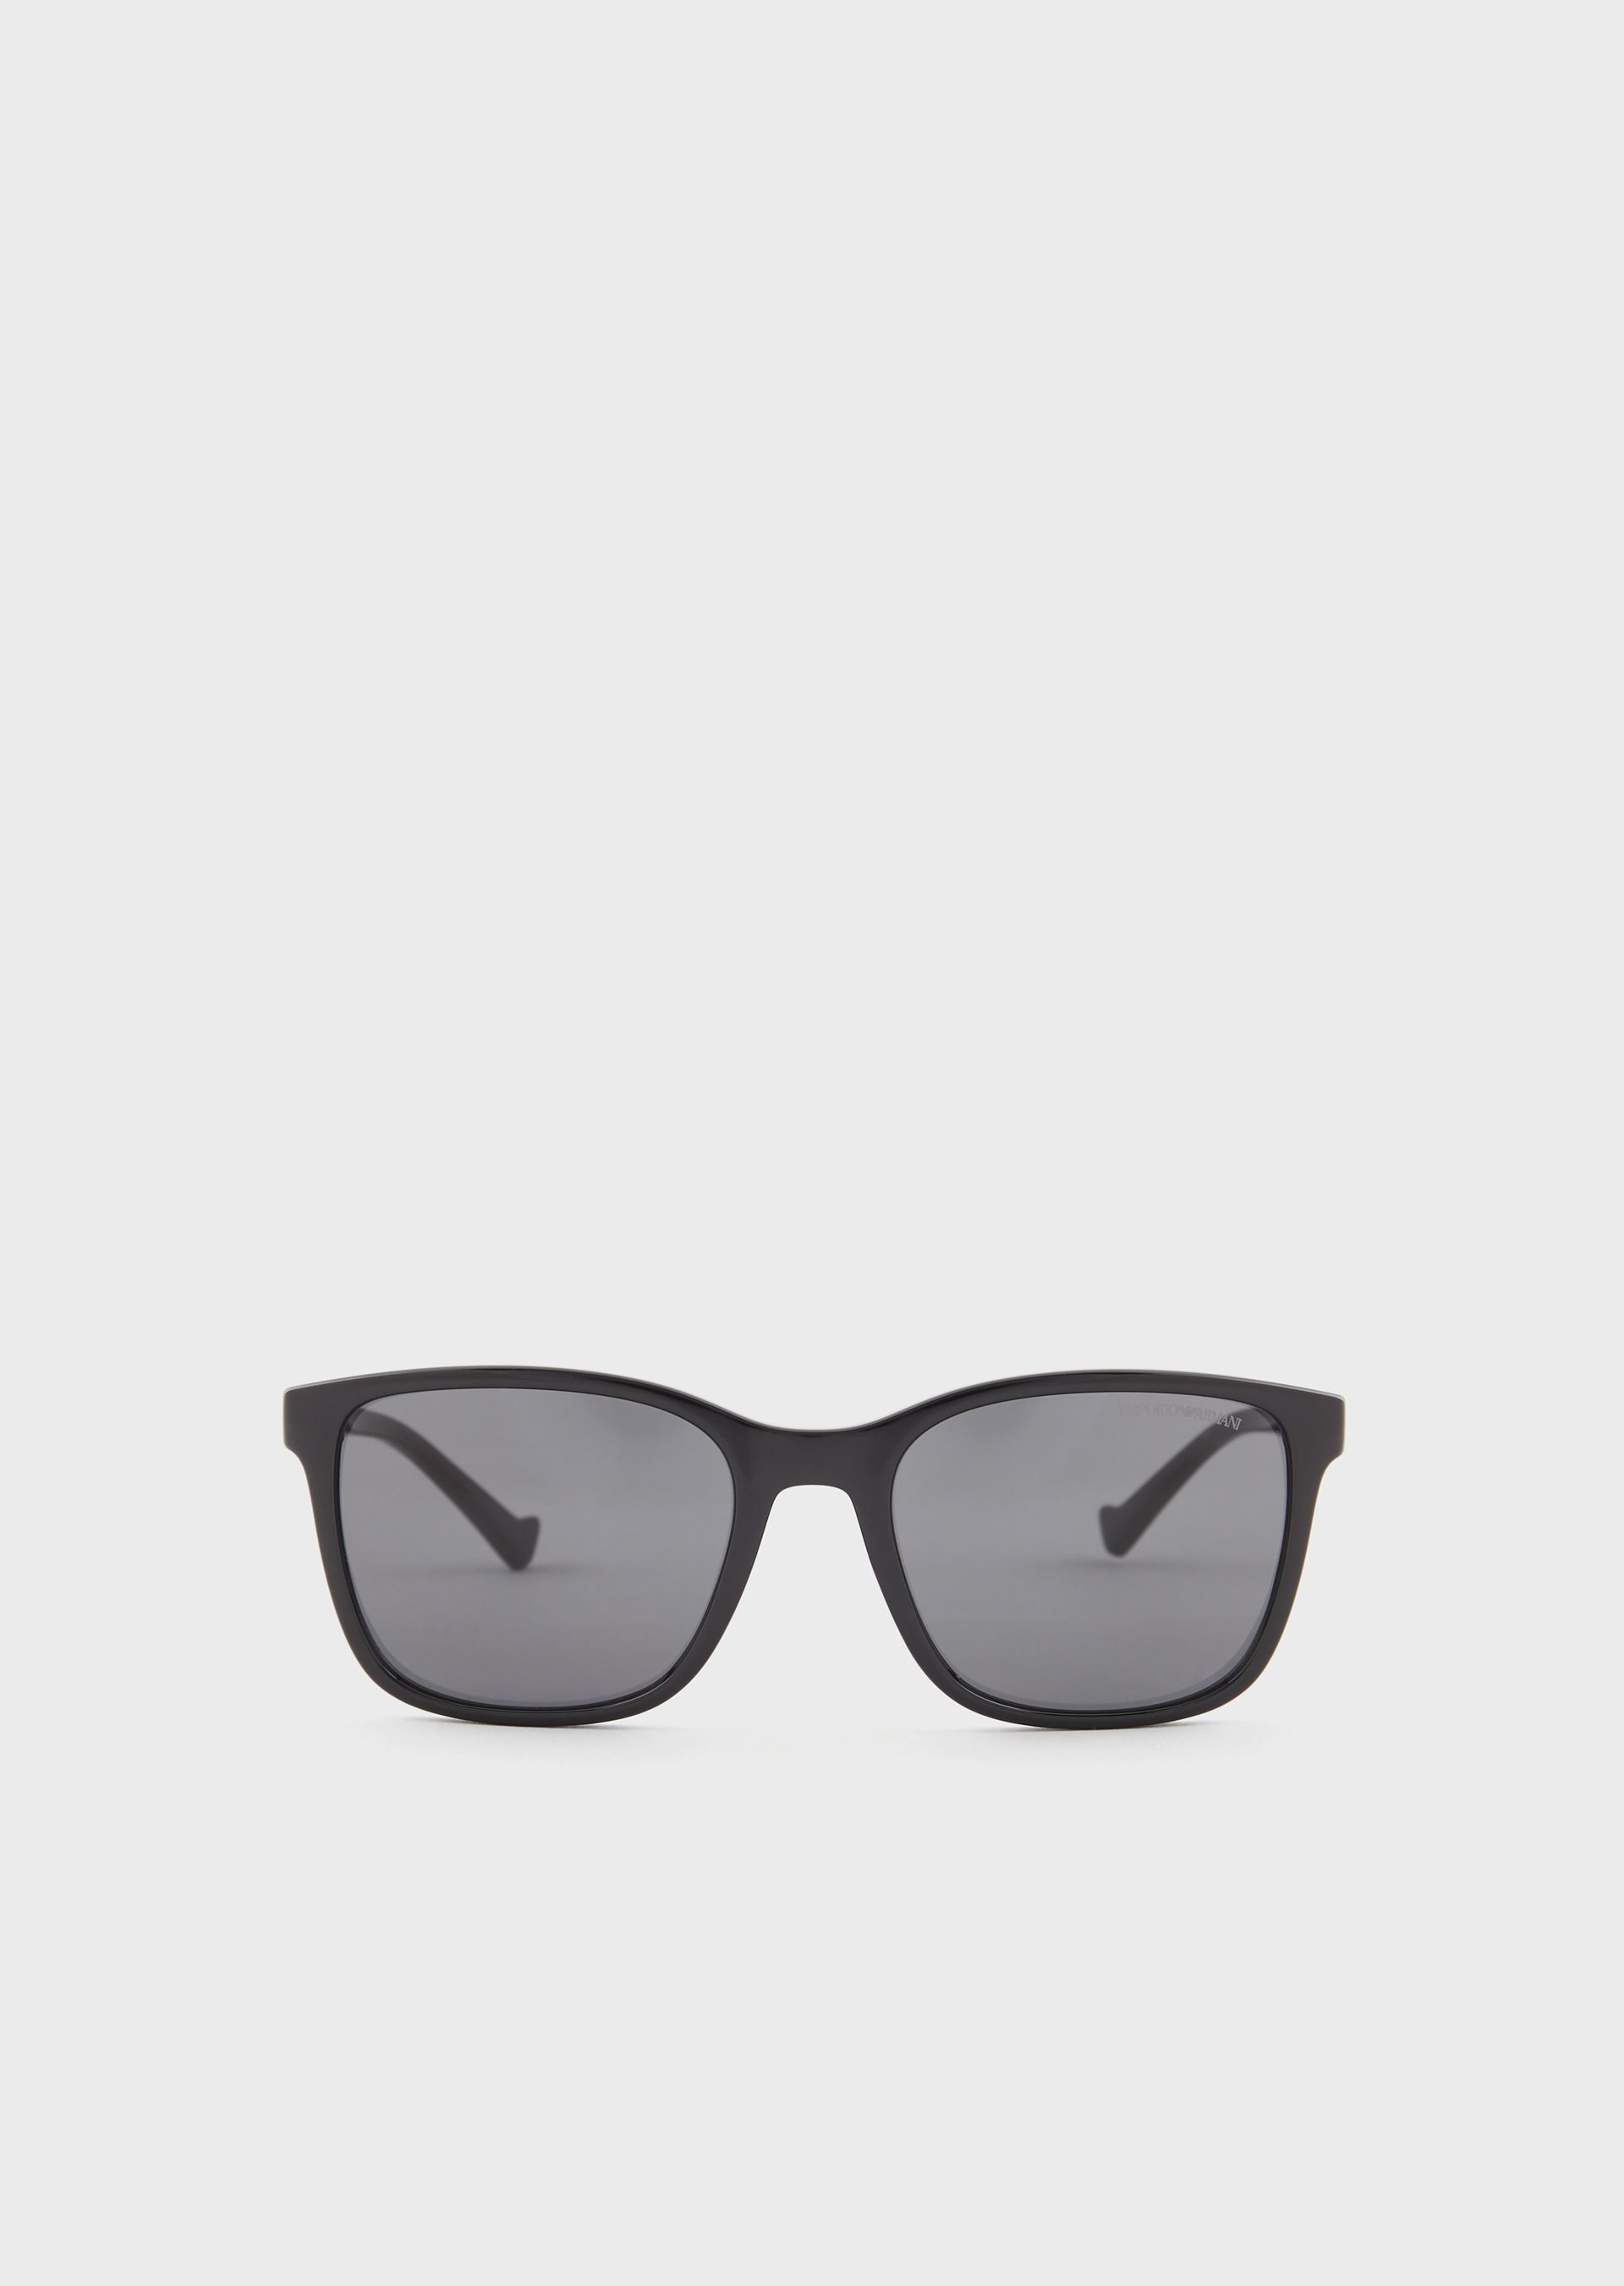 Emporio Armani Sunglasses - Item 46674604 In Black